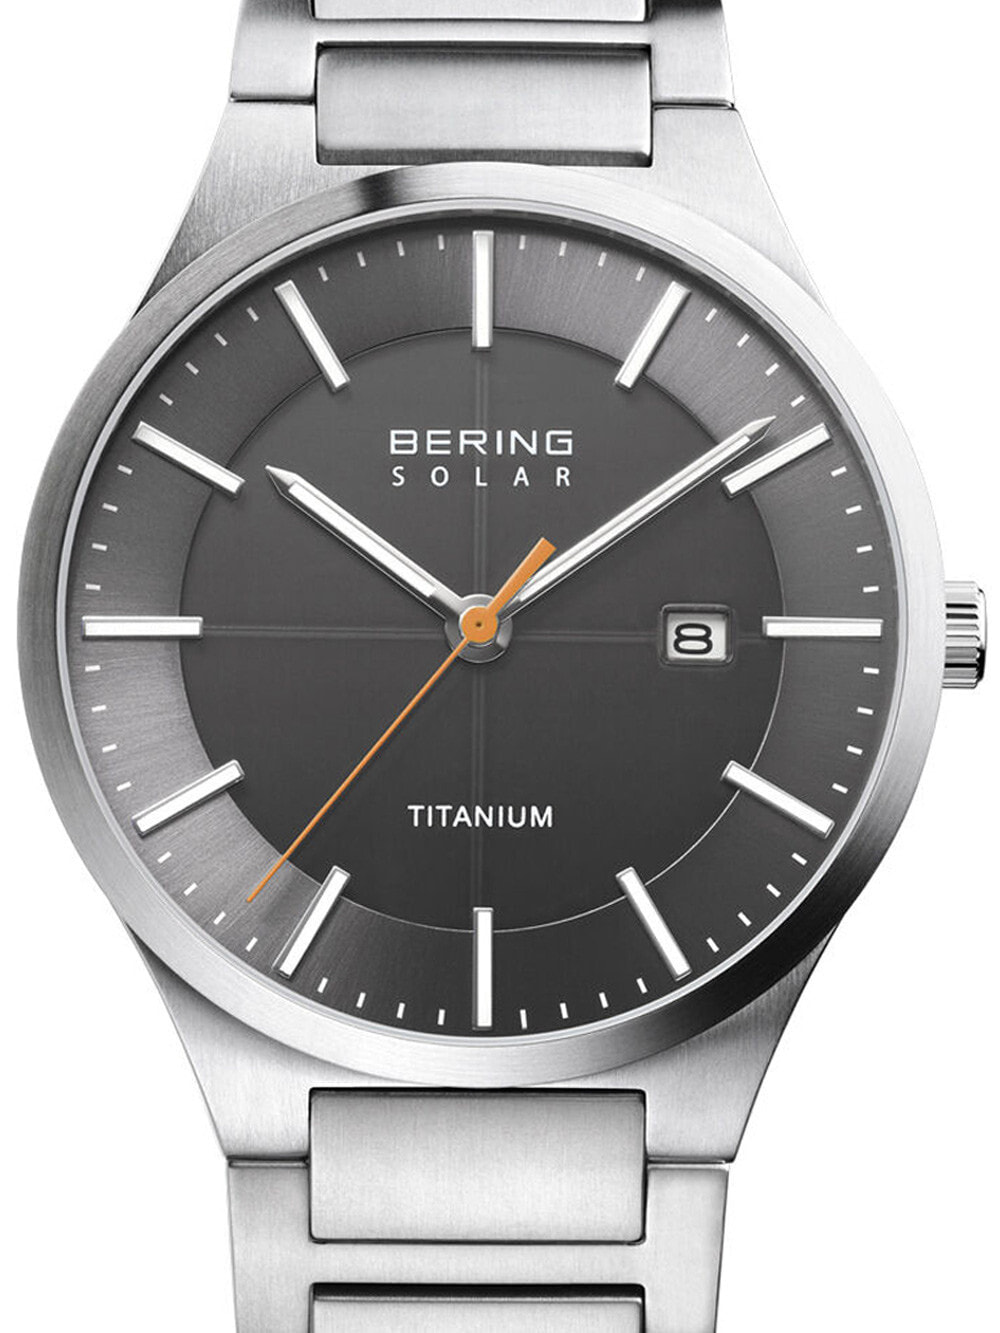 Мужские наручные часы с серебряным браслетом Bering 15239-777 solar mens 39mm 10ATM